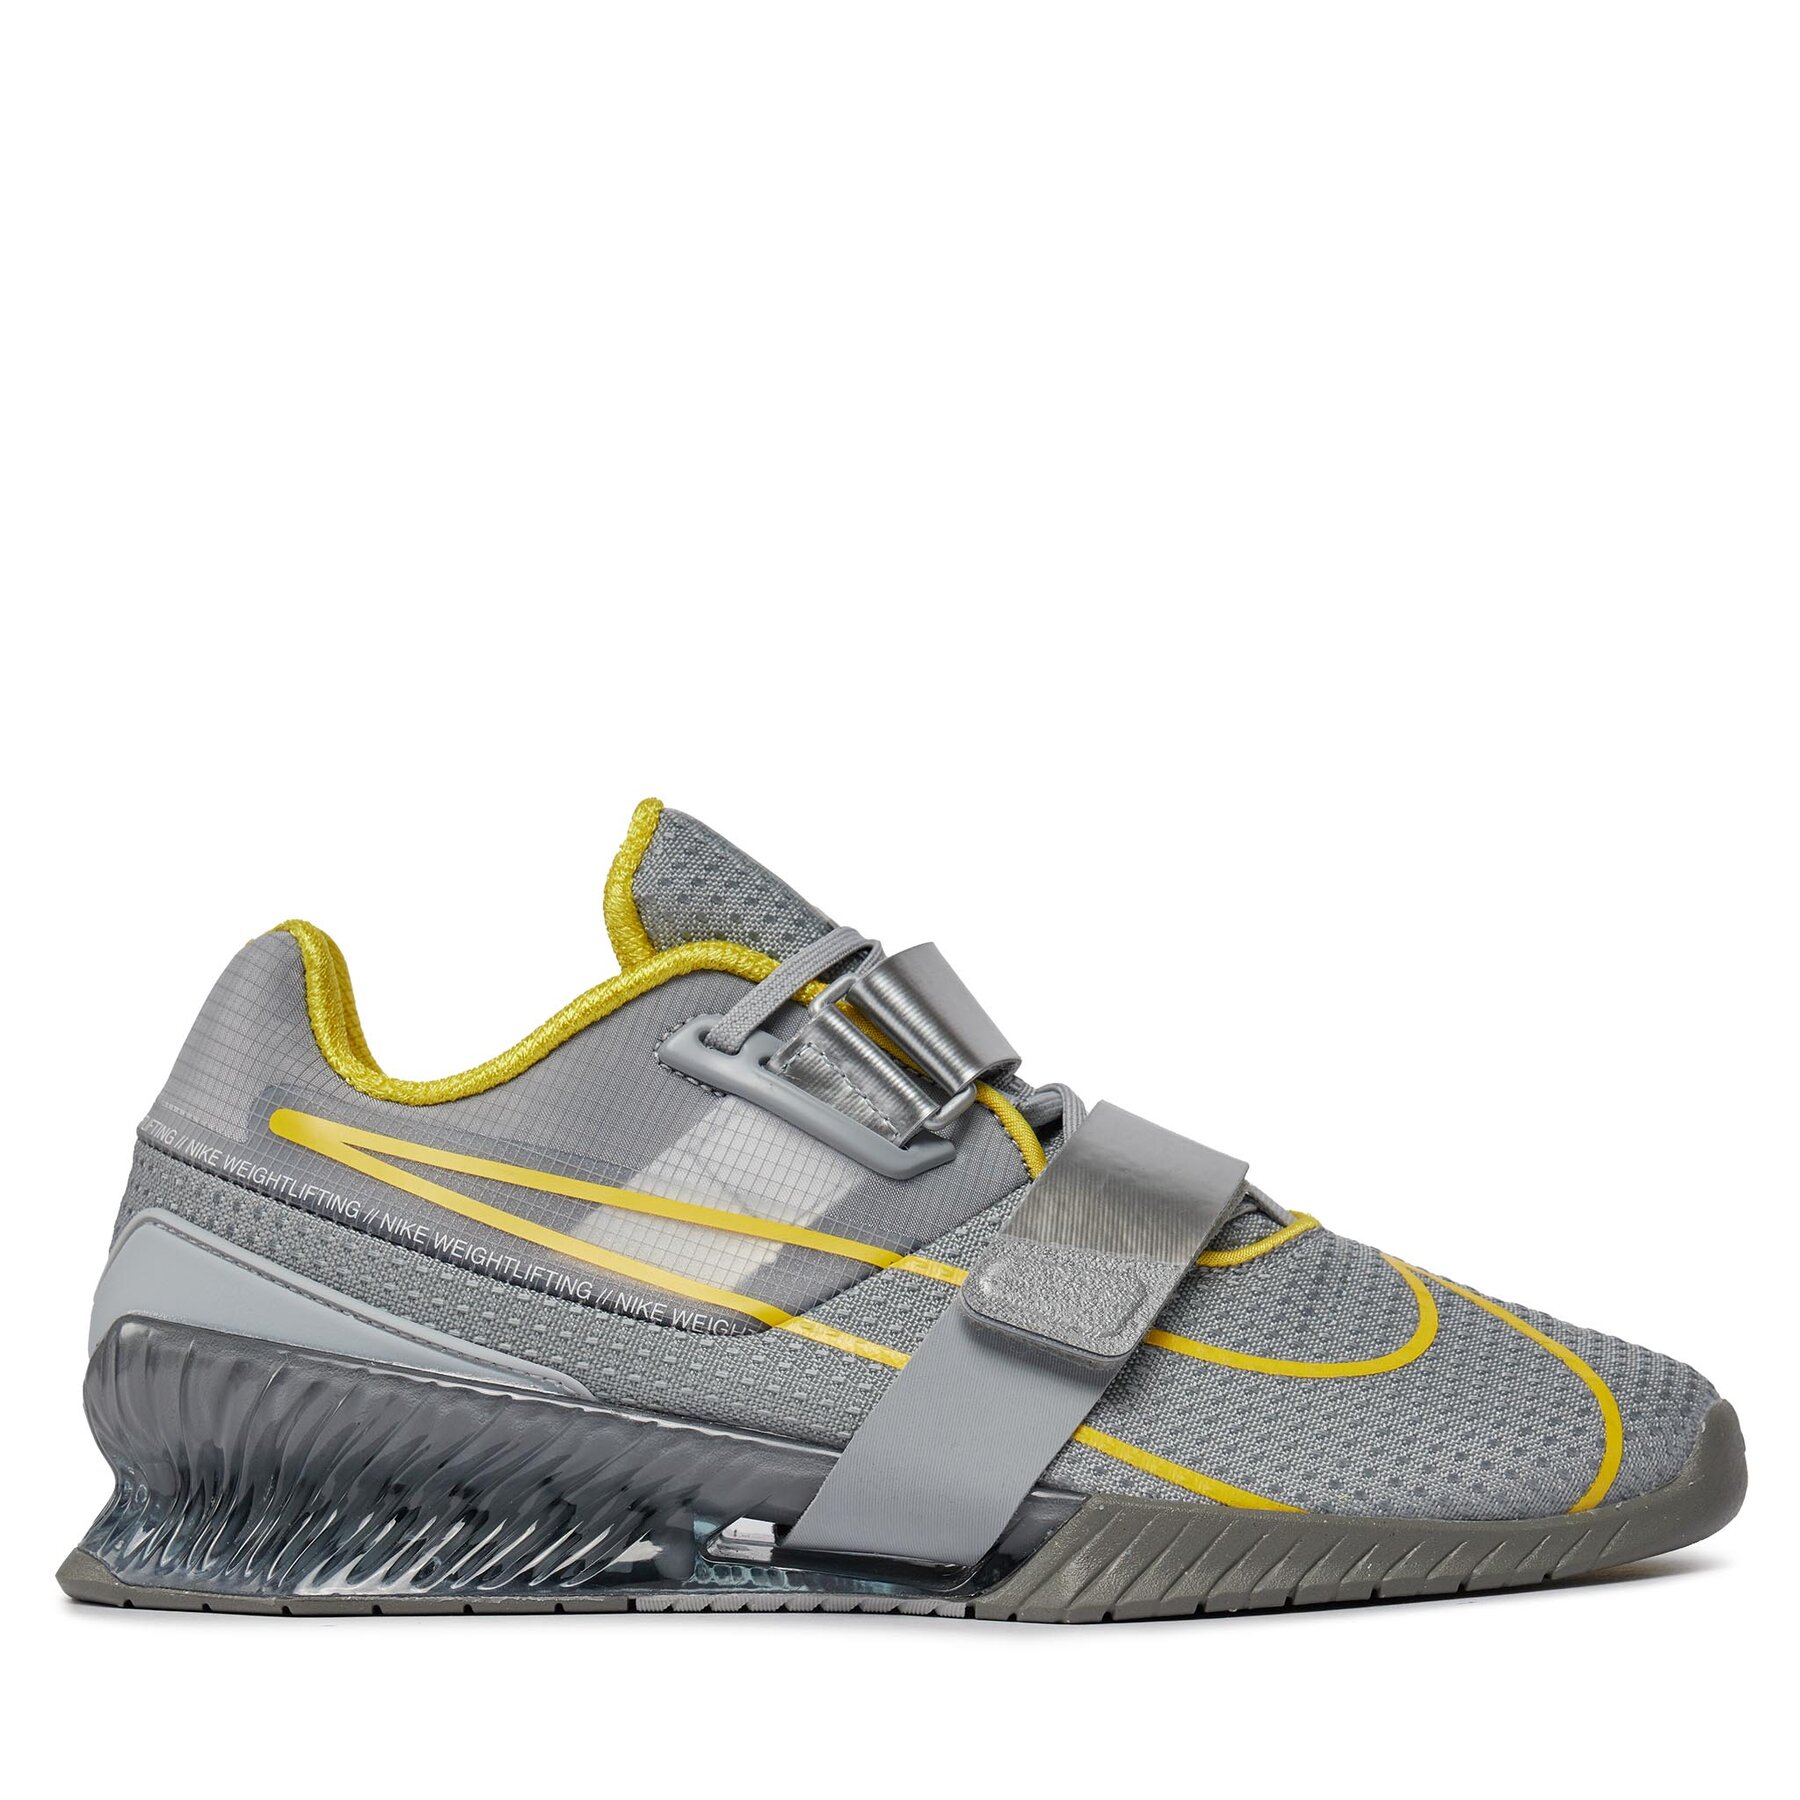 Chaussures pour la salle de sport Nike Romaleos 4 CD3463 002 Argent